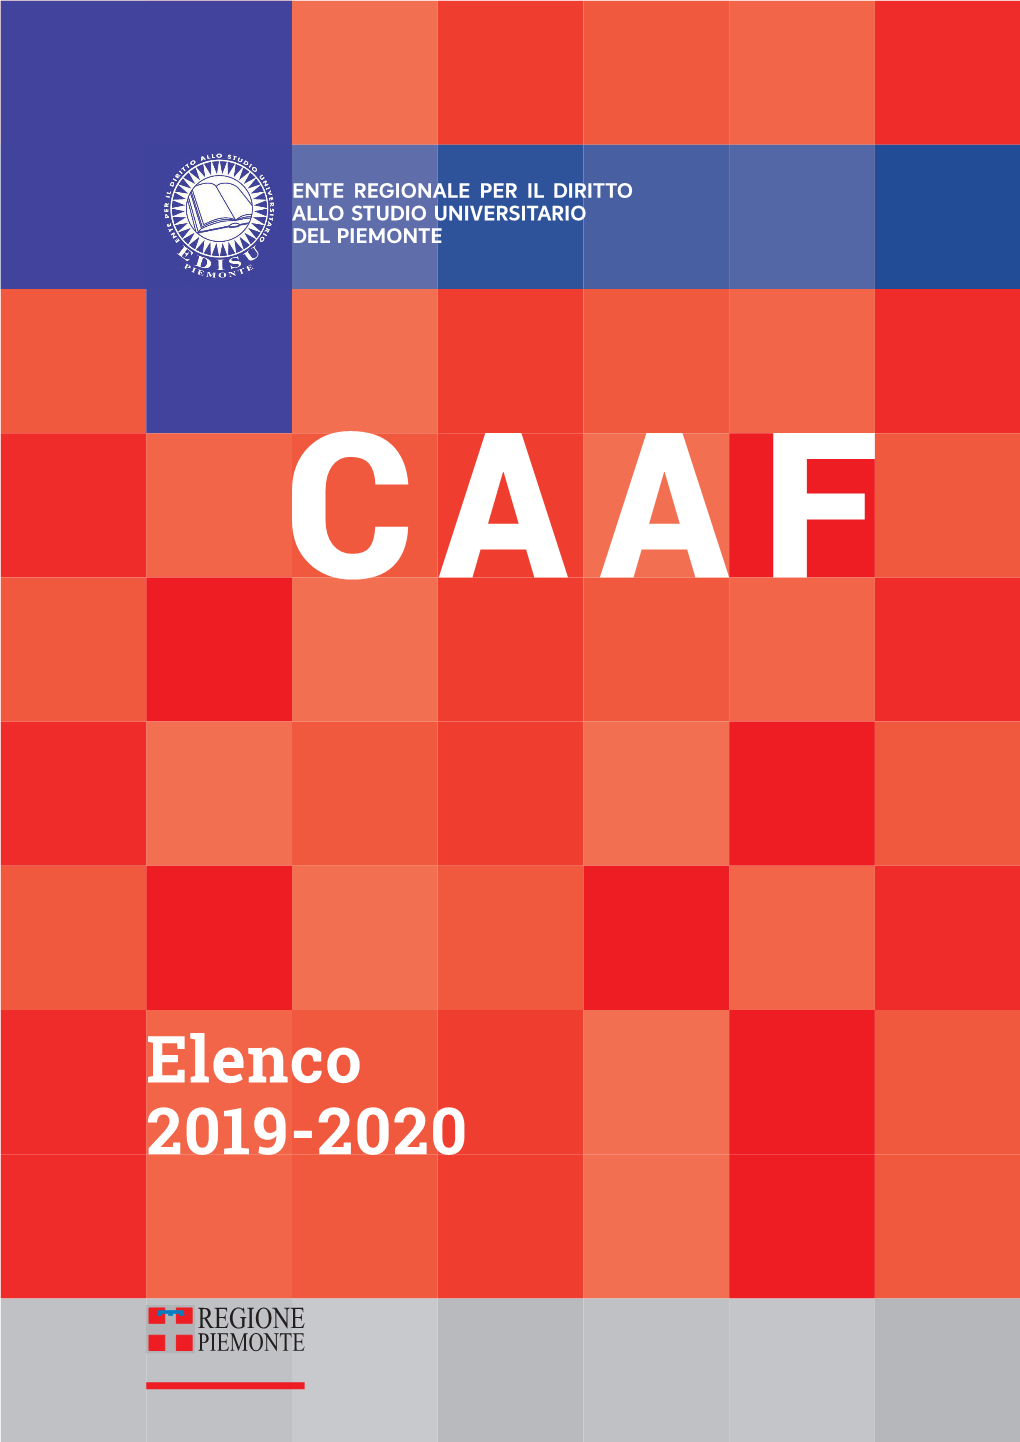 Elenco CAAF 2019 20 Aggiornamento 5 Settembre